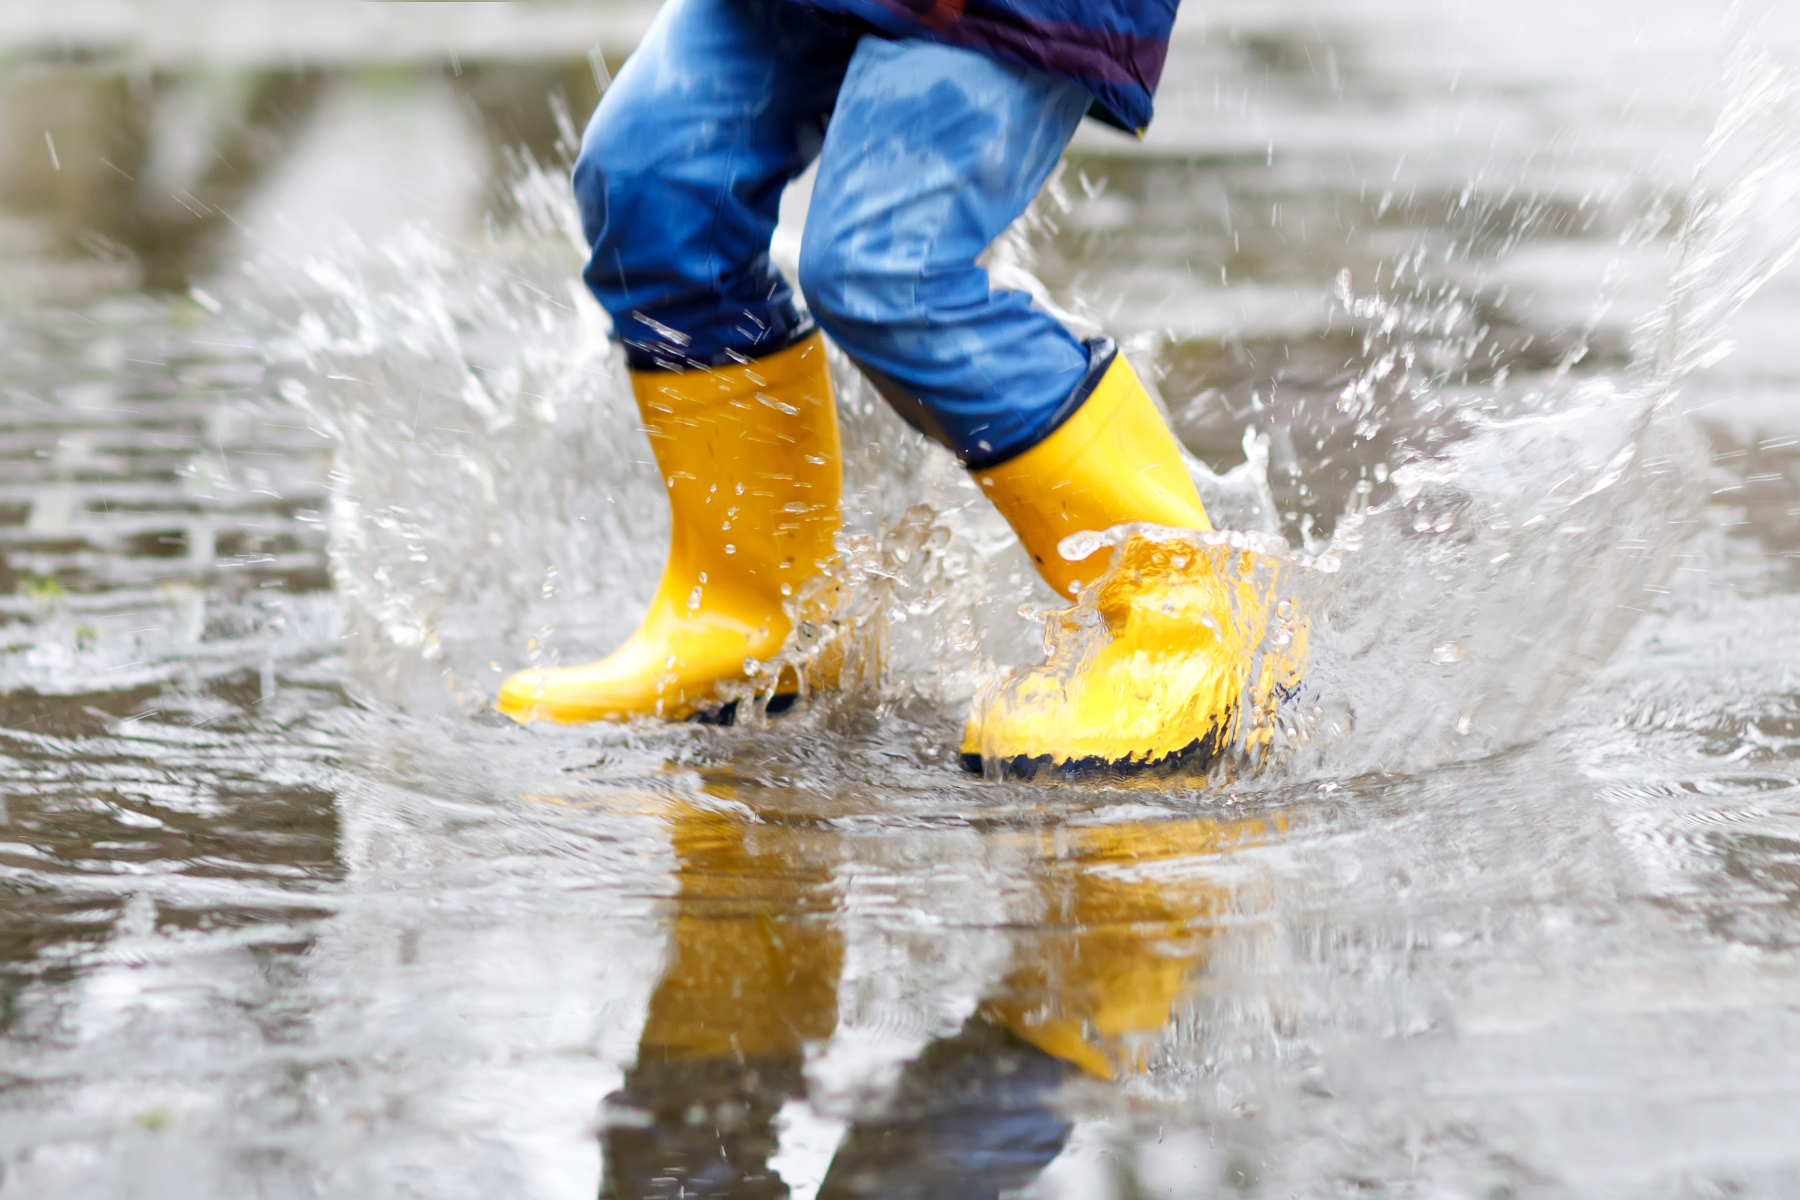 Illustrasjonsfoto av et barn som hopper i en vanndam med gule støvler. Foto: Mostphotos